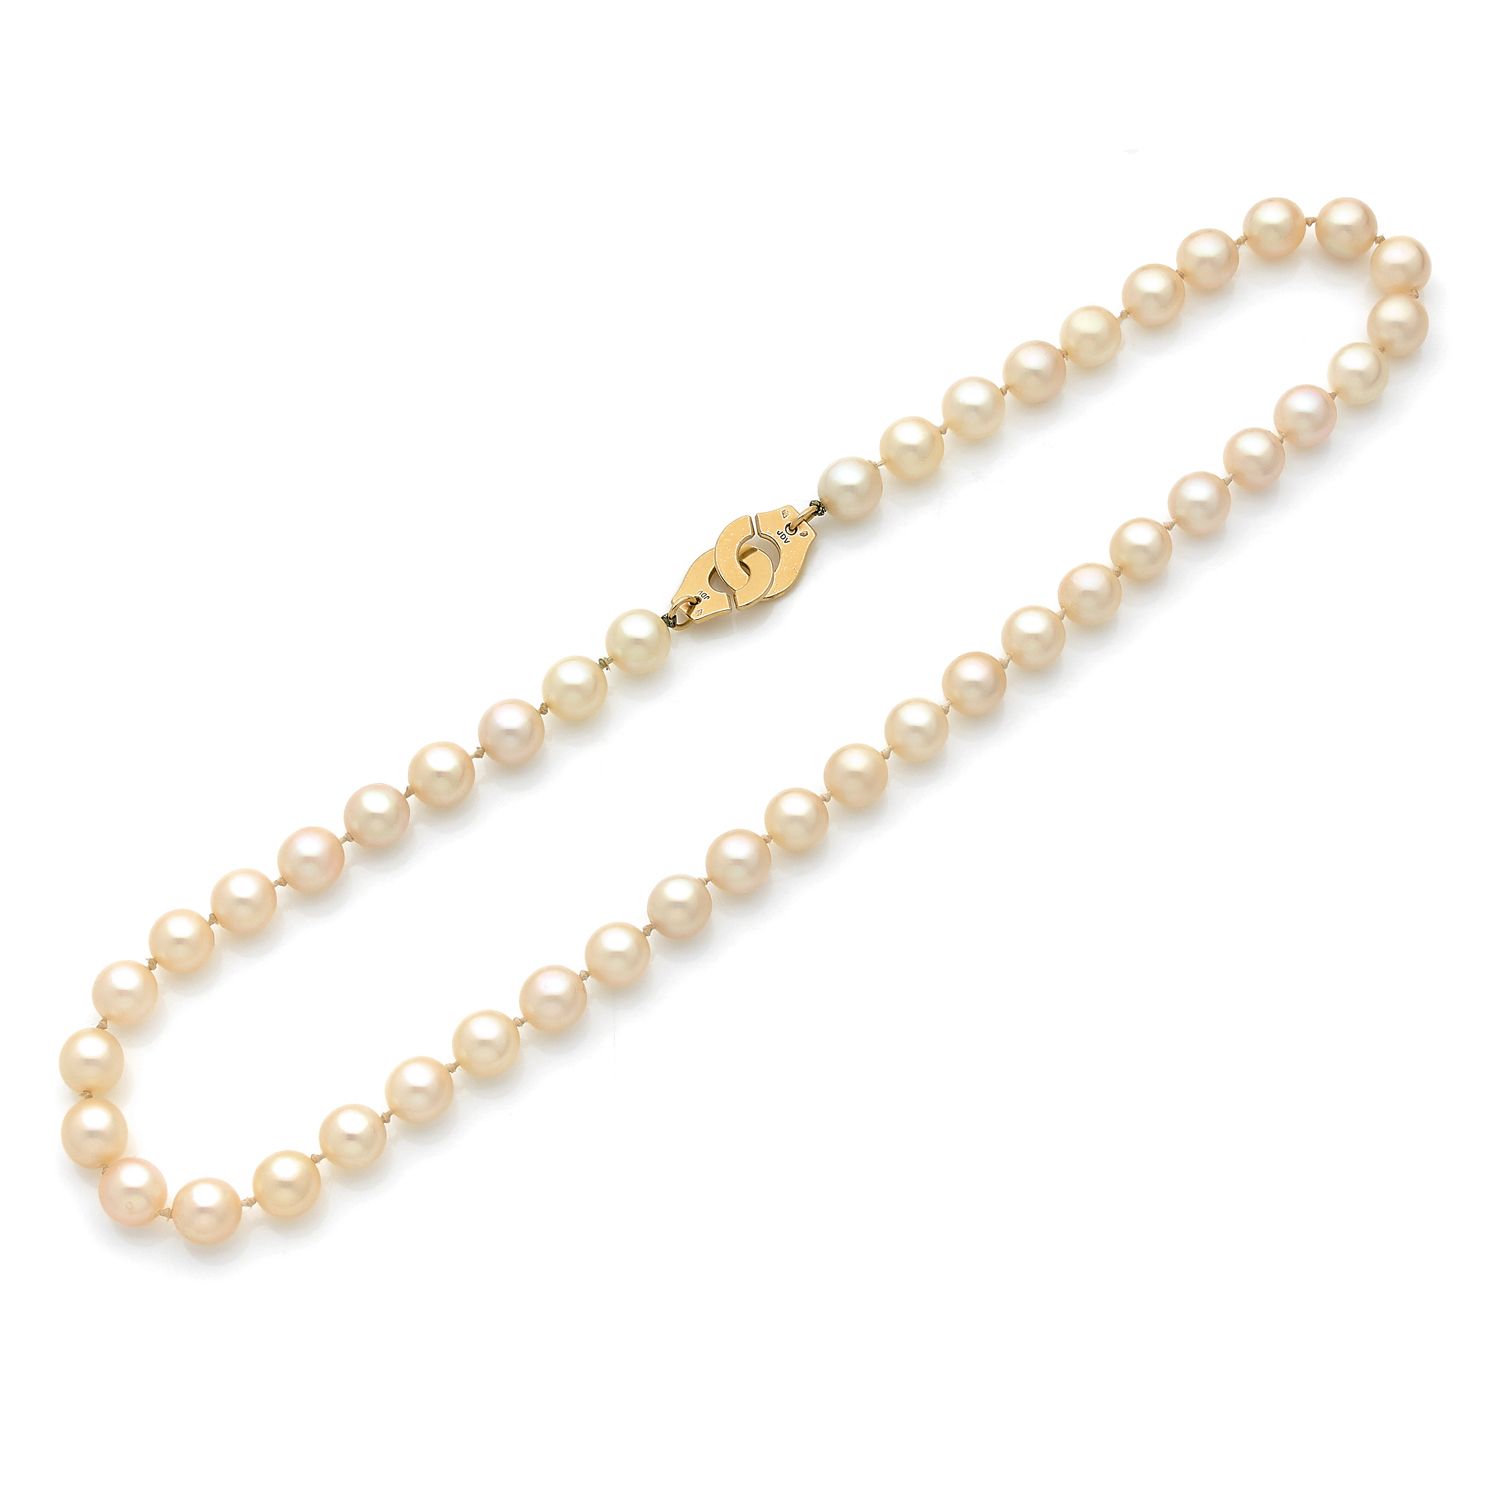 Null DINH VAN

项链一排43颗直径相同的养殖珍珠，18K（750‰）黄金 "袖口 "扣。

有图案的

长度：45厘米

毛重：42克